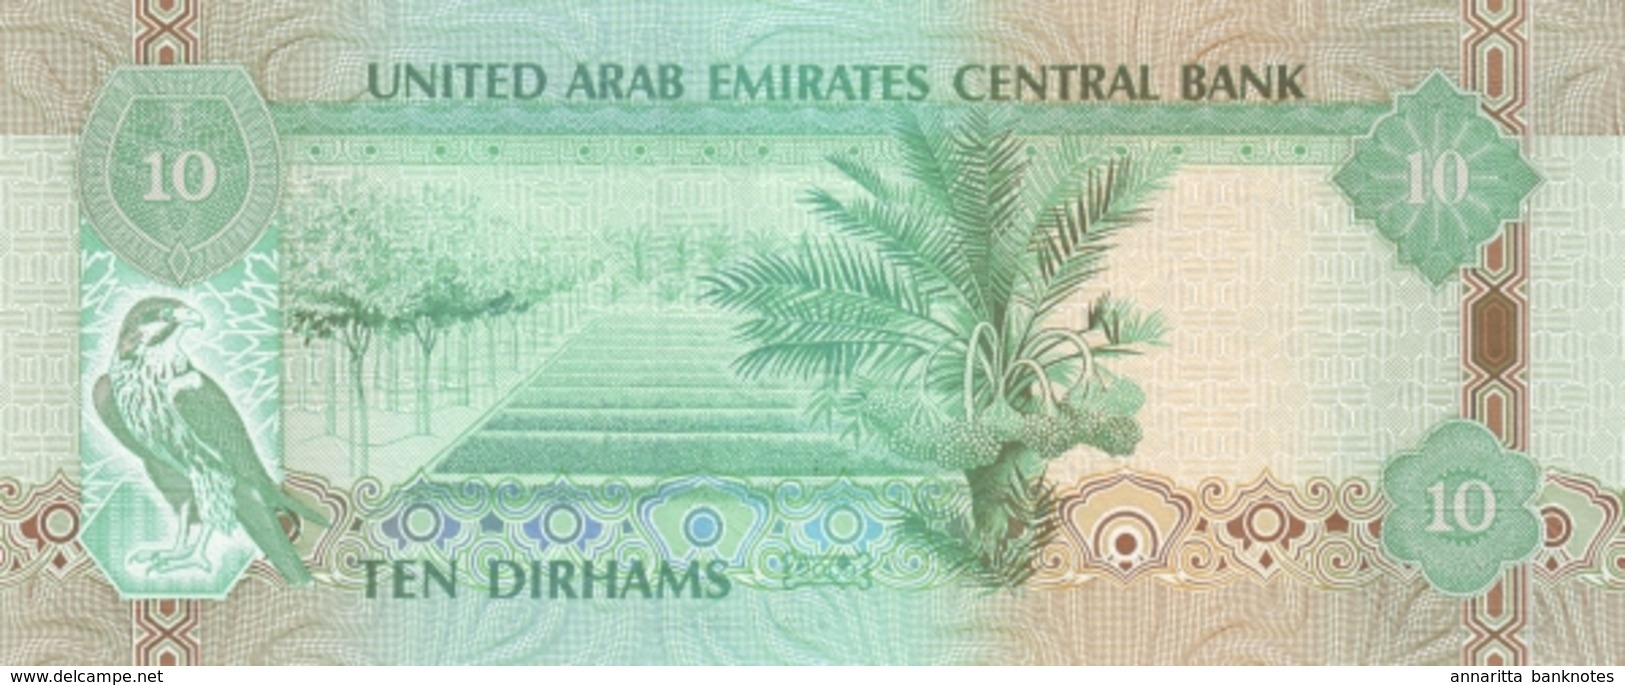 UNITED ARAB EMIRATES 10 DIRHAMS 1430 (2009) P-27a UNC  [AE227a] - United Arab Emirates